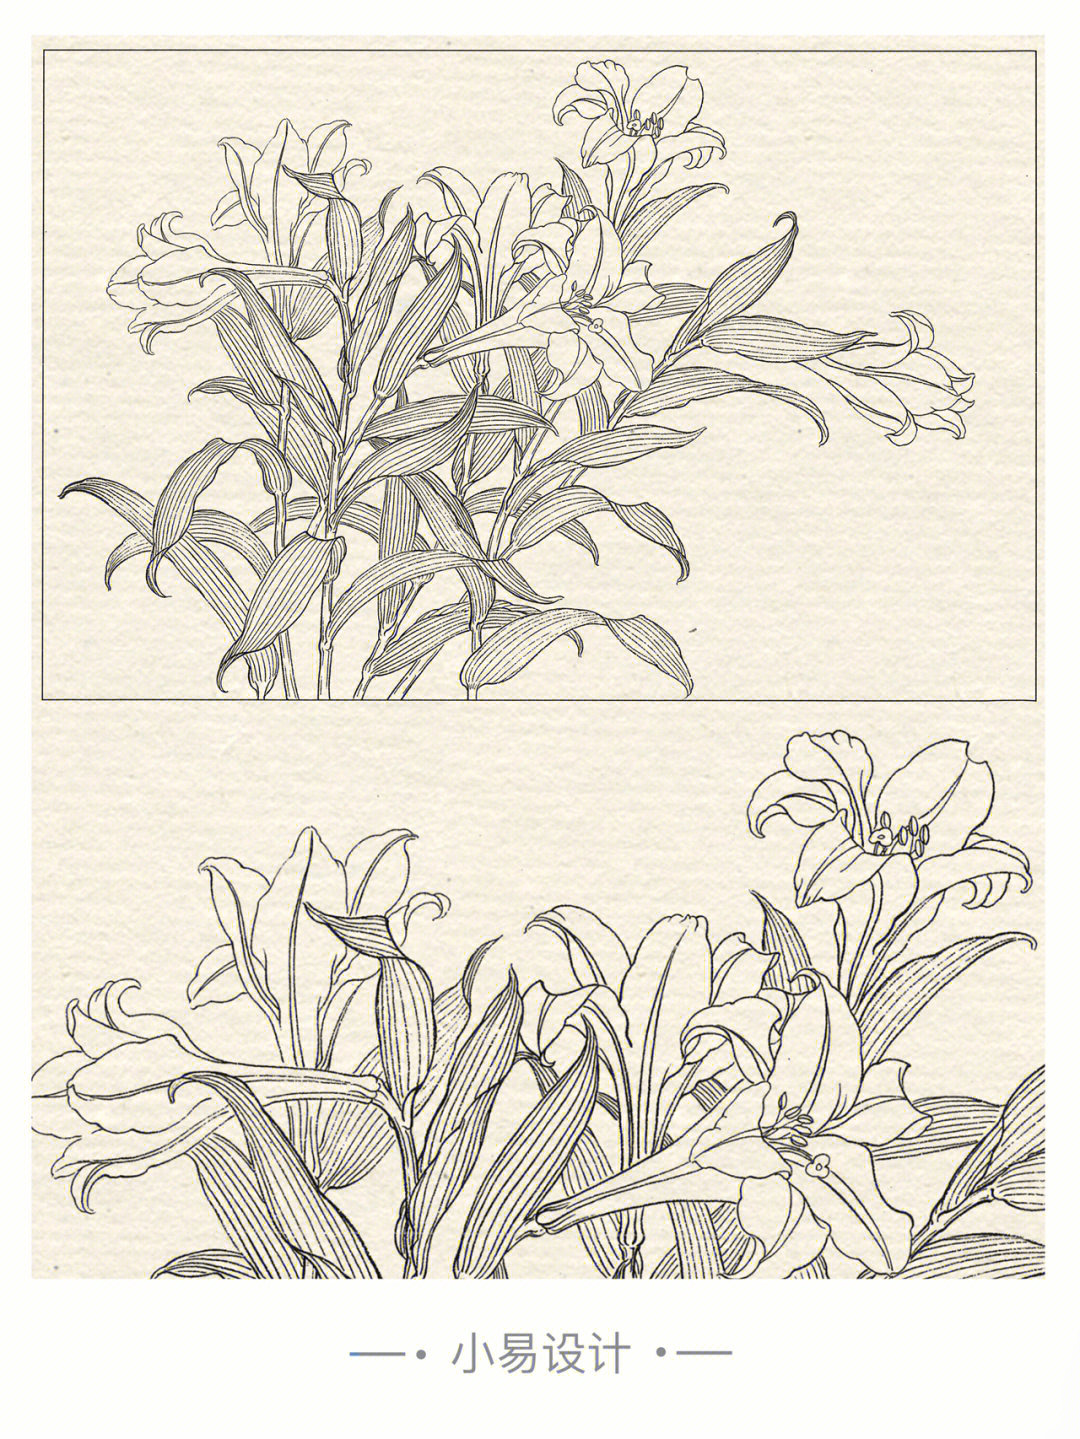 花鸟花草,白描,线描工笔画,临摹素材电子版jpg参考花卉线稿